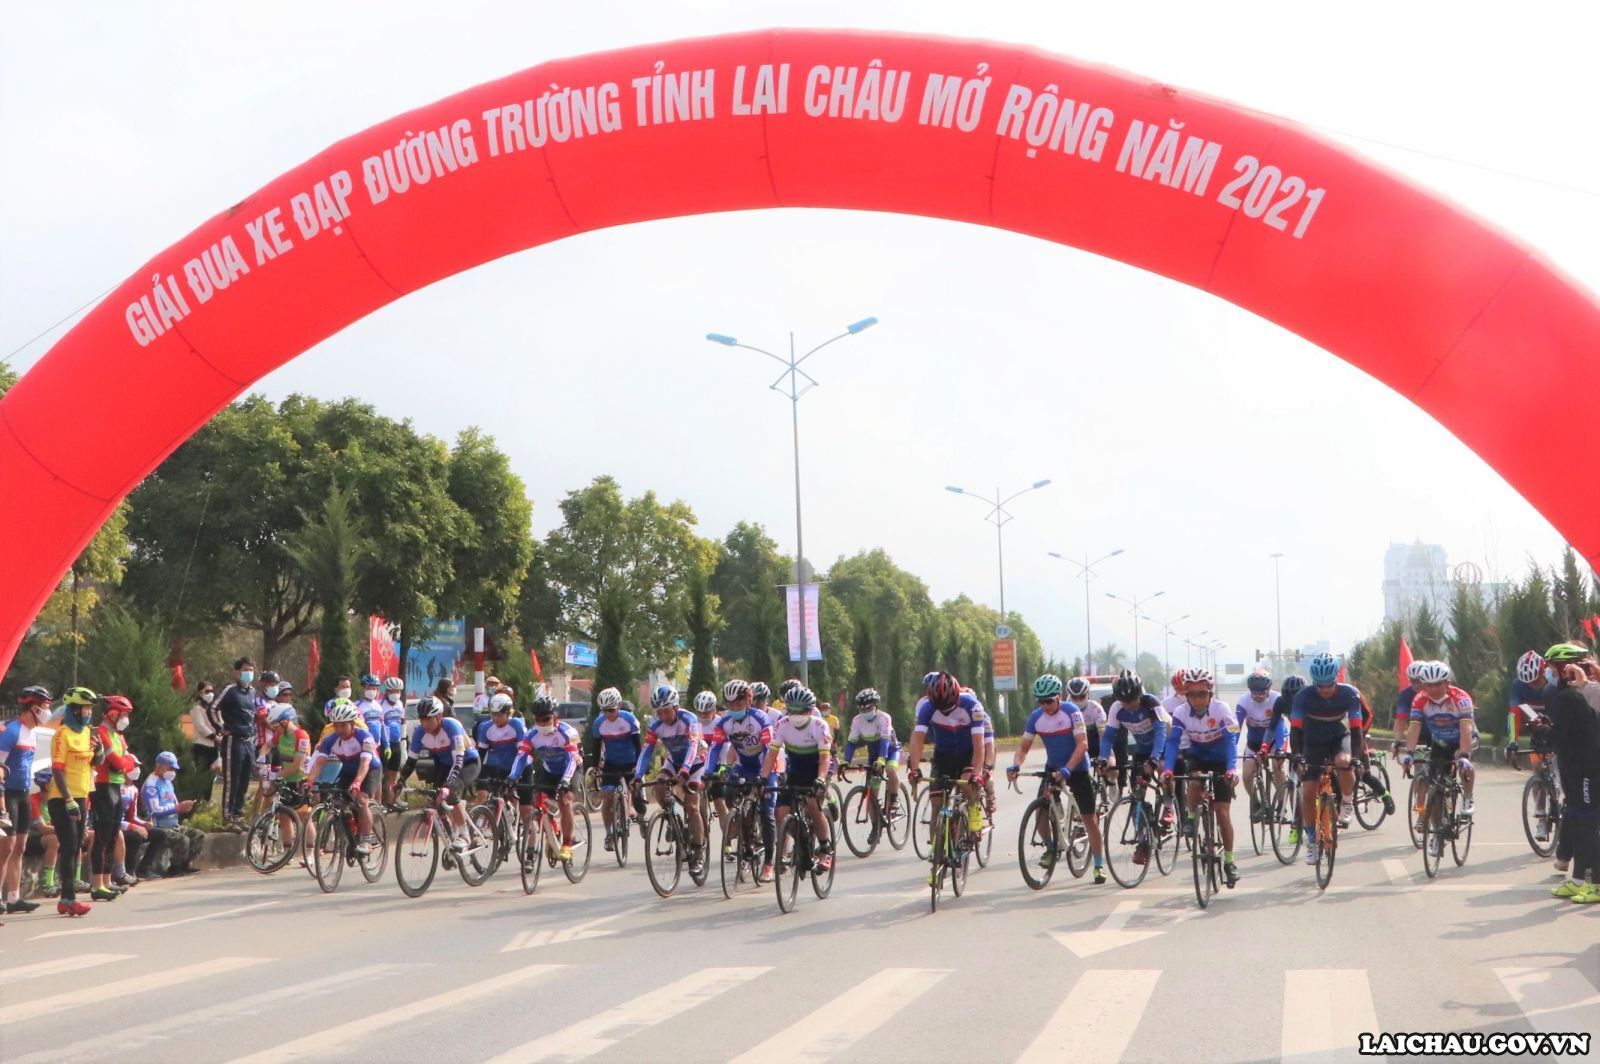 Giải Đua Xe đạp tỉnh Lai Châu mở rộng lần thứ II năm 2022 sẽ diễn ra trong 2 ngày (26 - 27/11/2022)